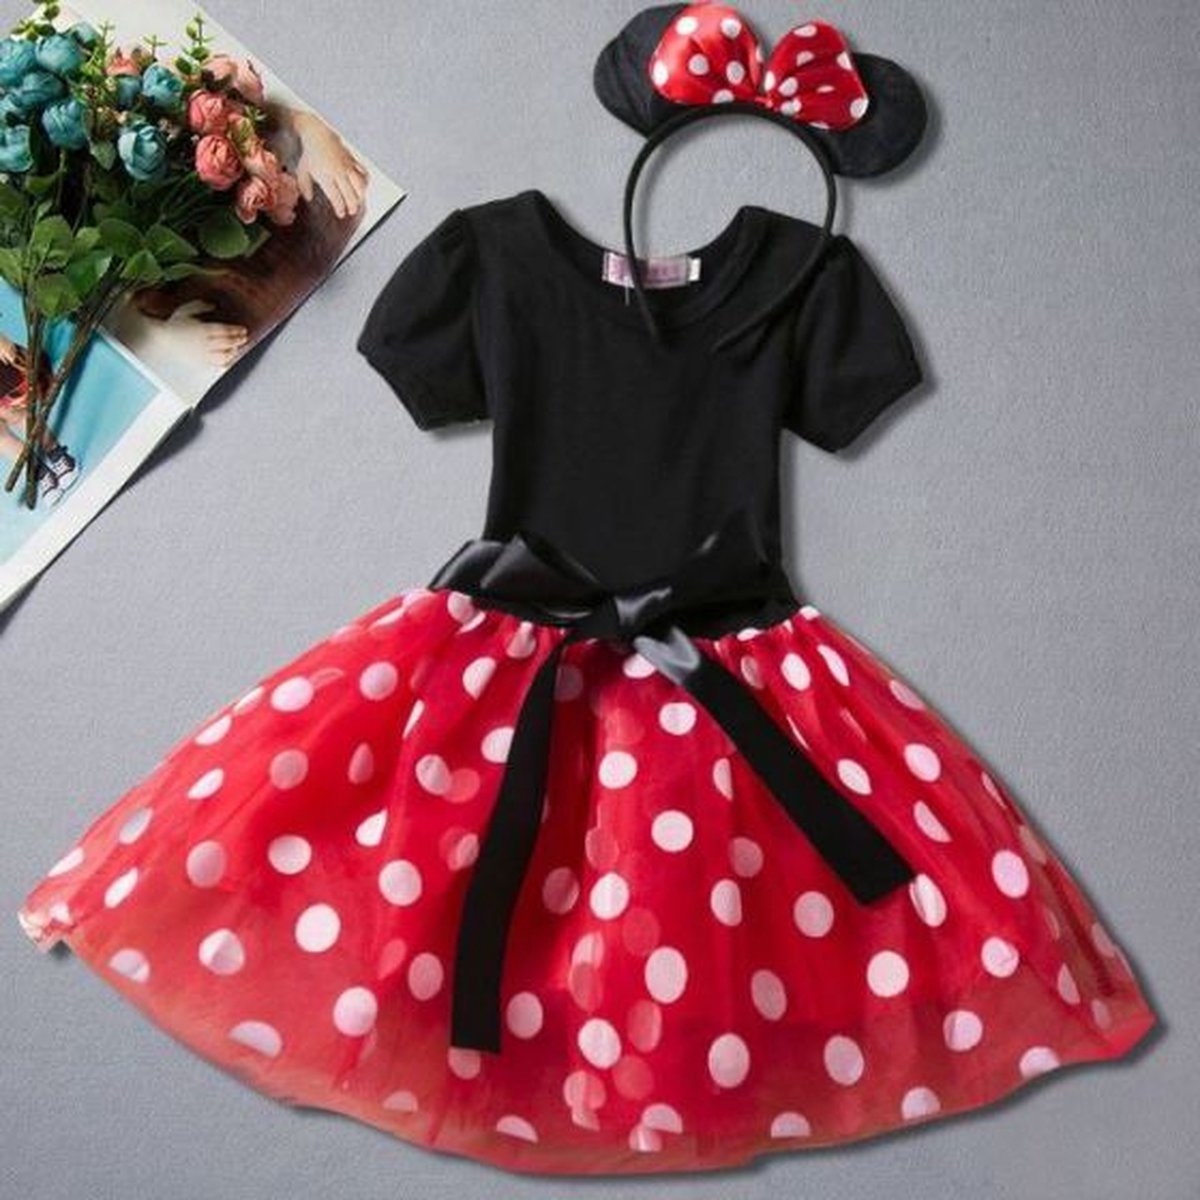 Robe Minnie Mouse Disneyland Paris Disney taille 12 mois rouge pois blanc